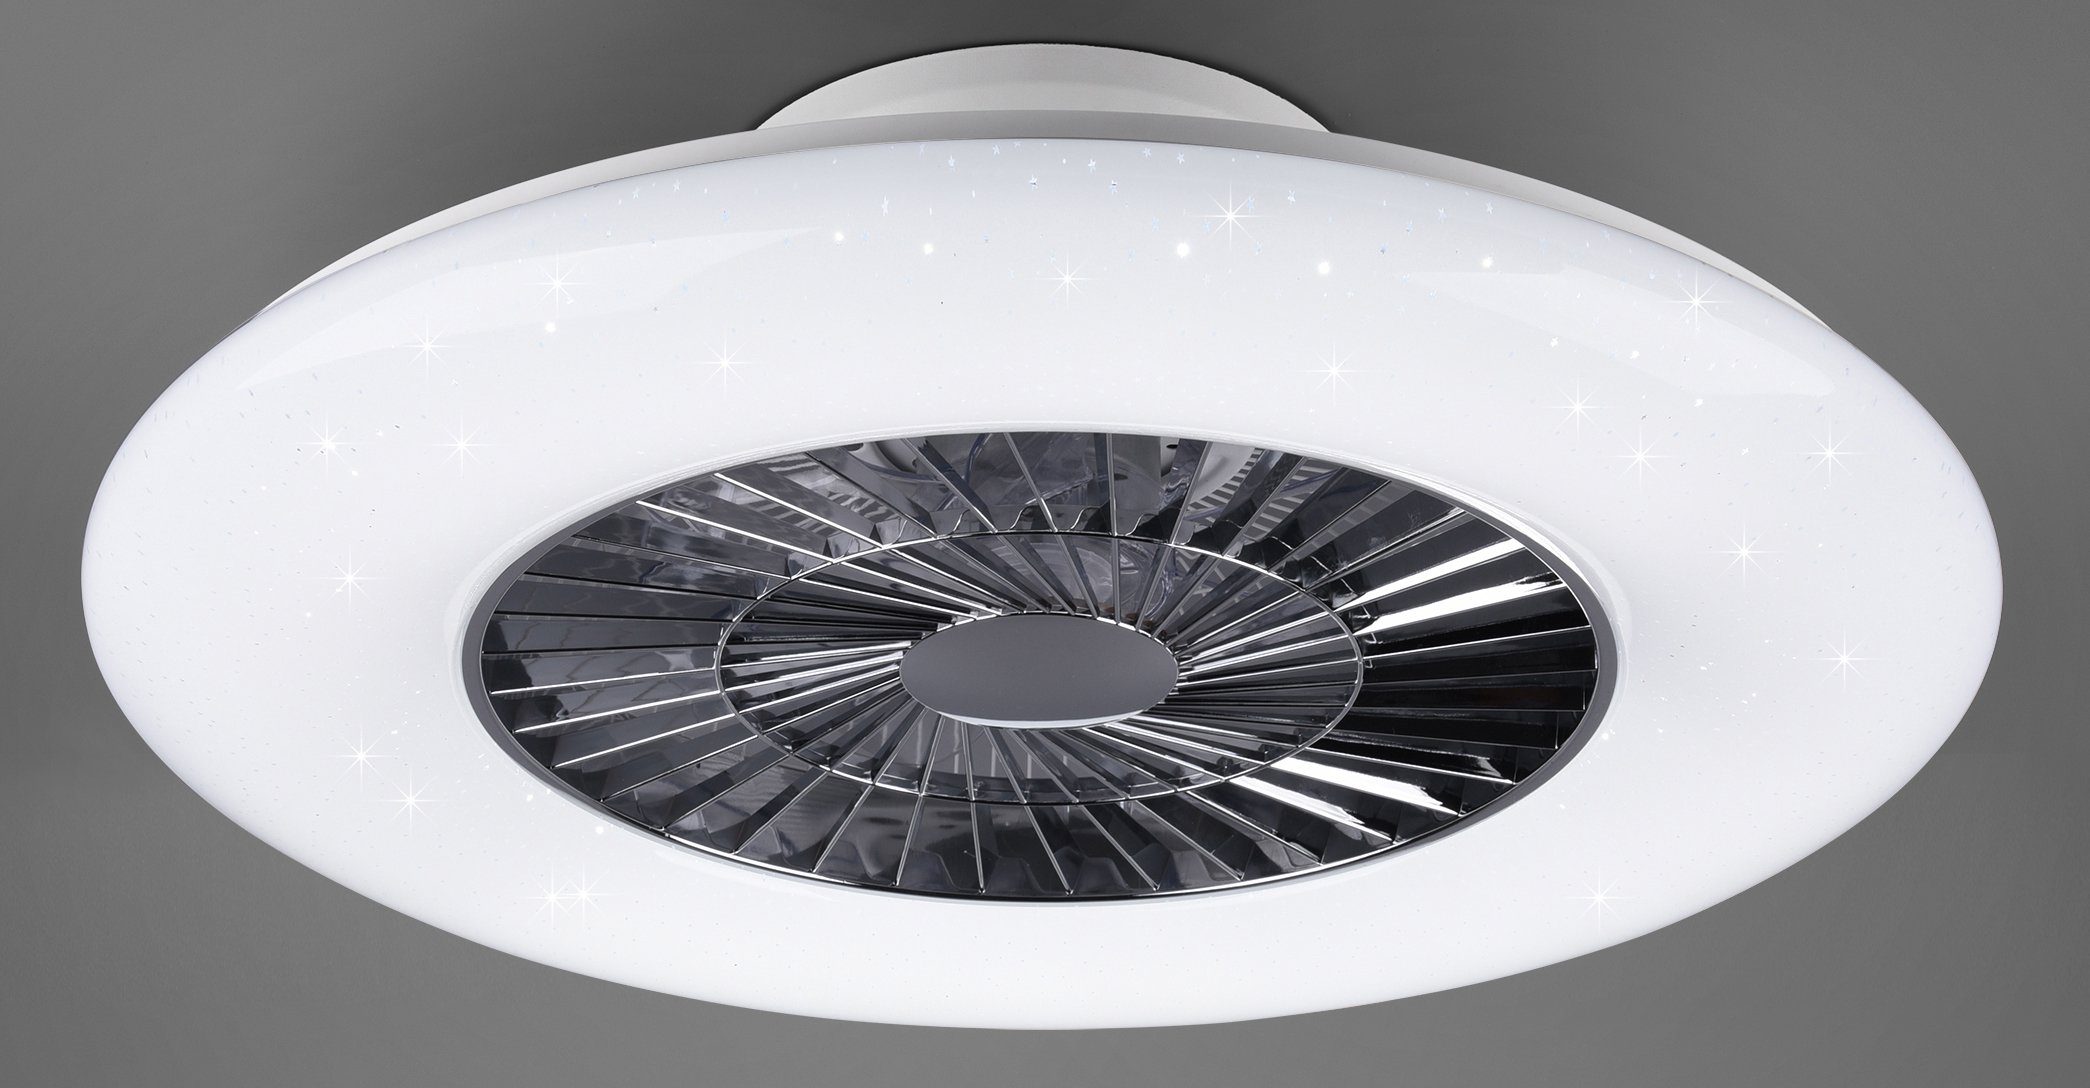 Ventilator, mit LED Fernbedienung., Timerfunktion, TRIO Visby, Leuchte/ Neutralweiß, fest LED Deckenleuchte Ventilatorfunktion, schaltbar Leuchten integriert, Ventilator getrennt